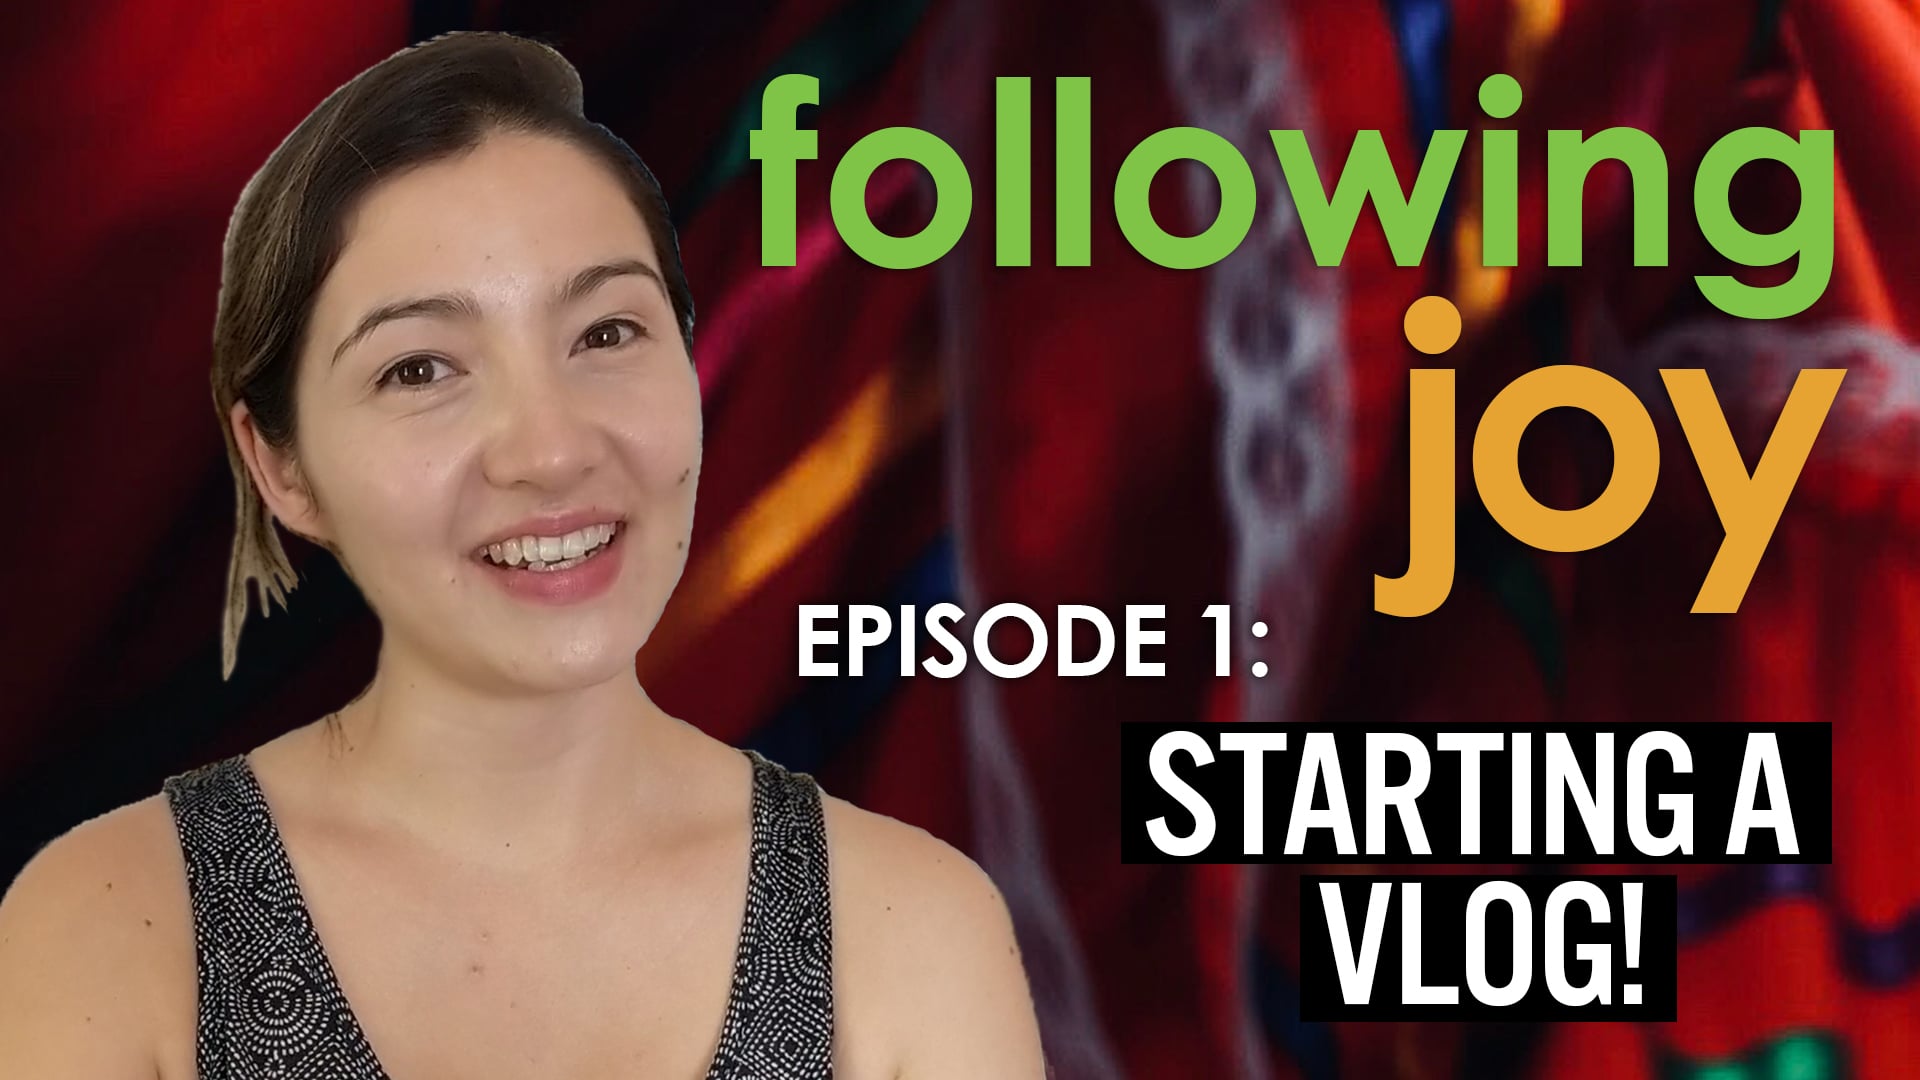 Dancing Joy Vlog: Following Joy - Ep 1: Starting a Vlog!